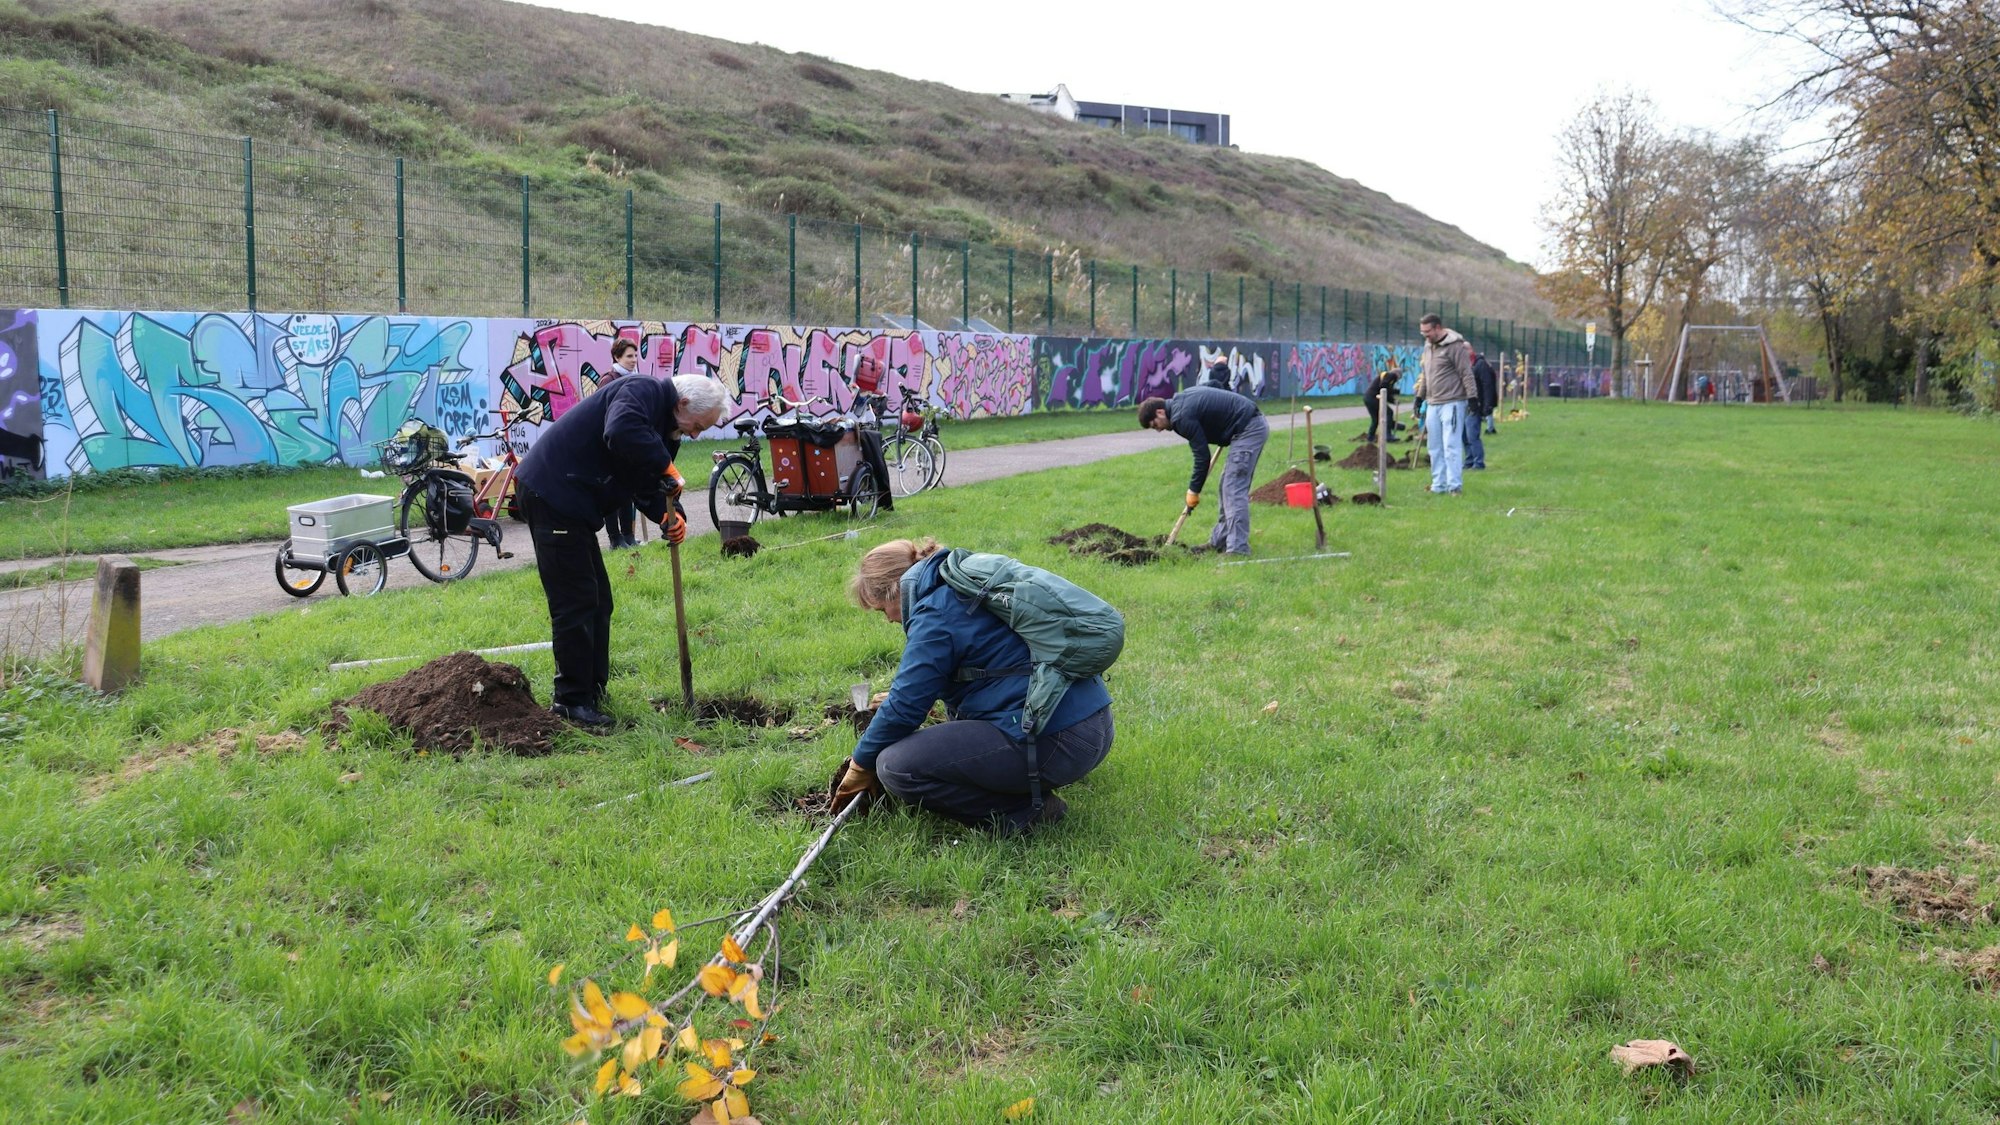 Am Rande eines Weges und einer Graffiti-Wand sind Männer und Frauen damit beschäftigt, Bäume zu pflanzen.